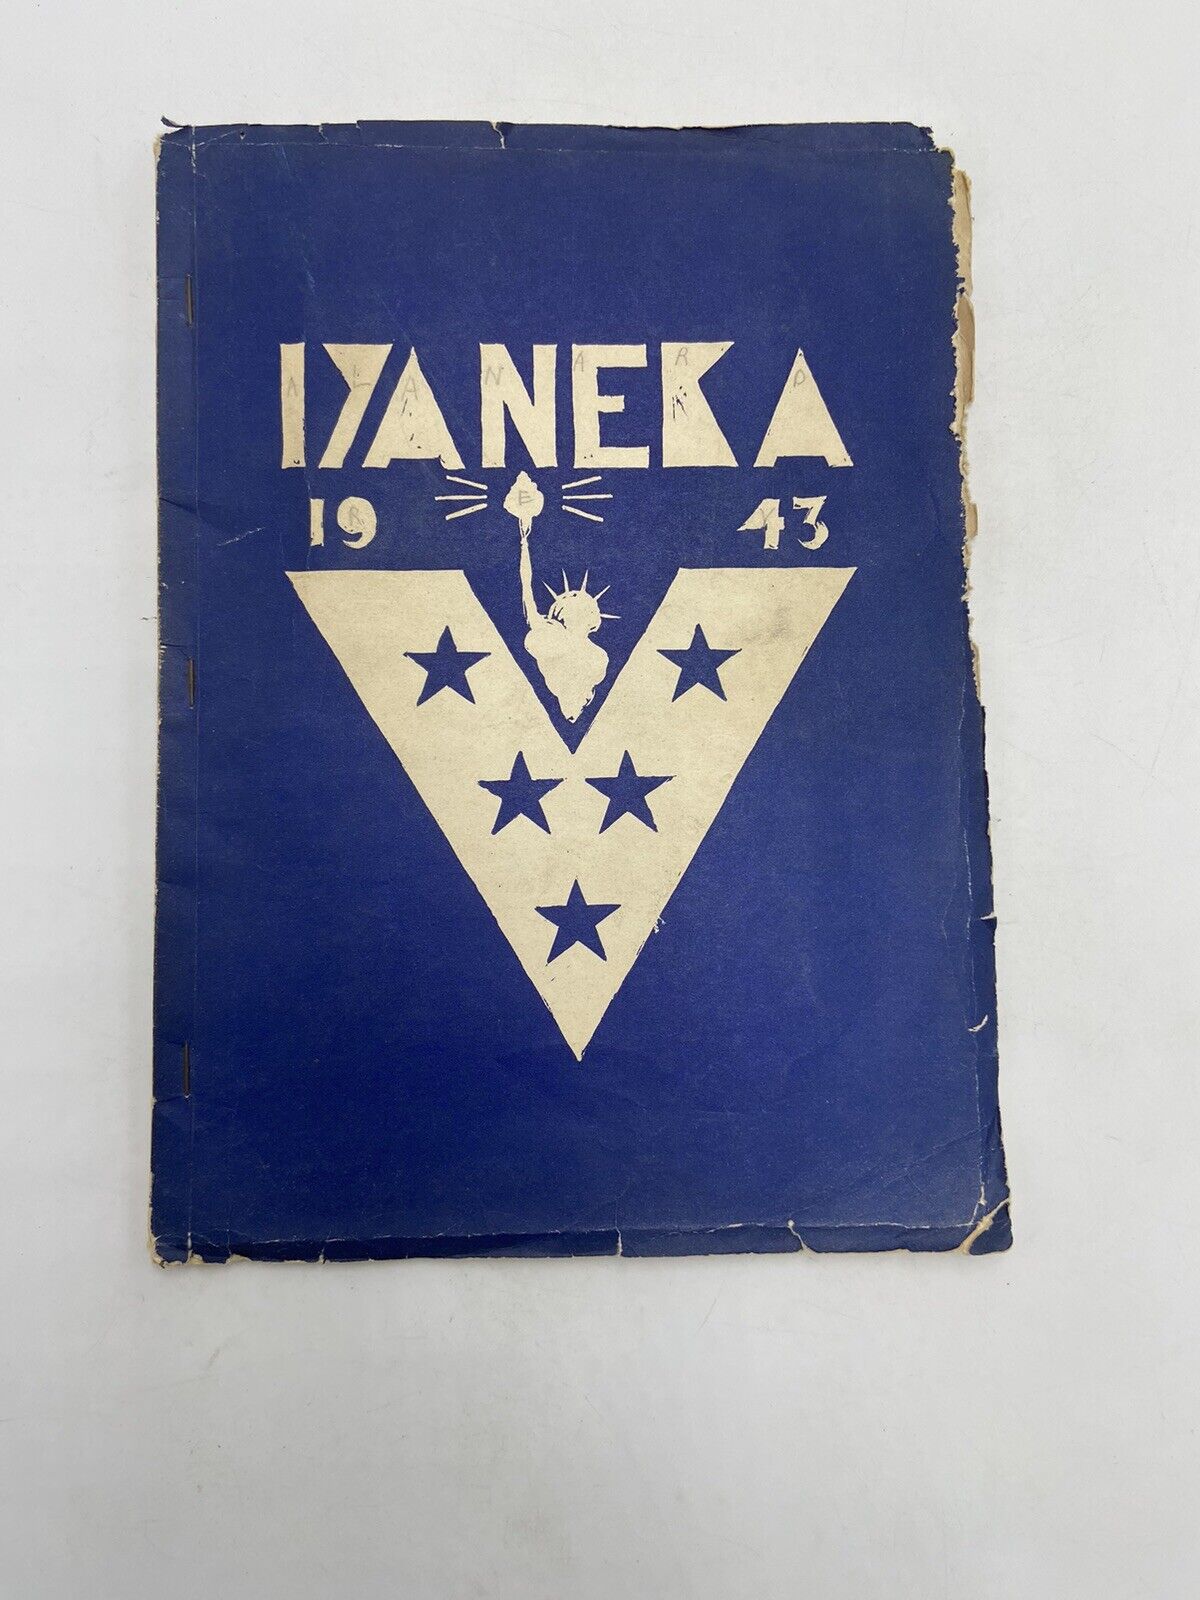 1943 chemawa junior high school riverside california yearbook iyaneka